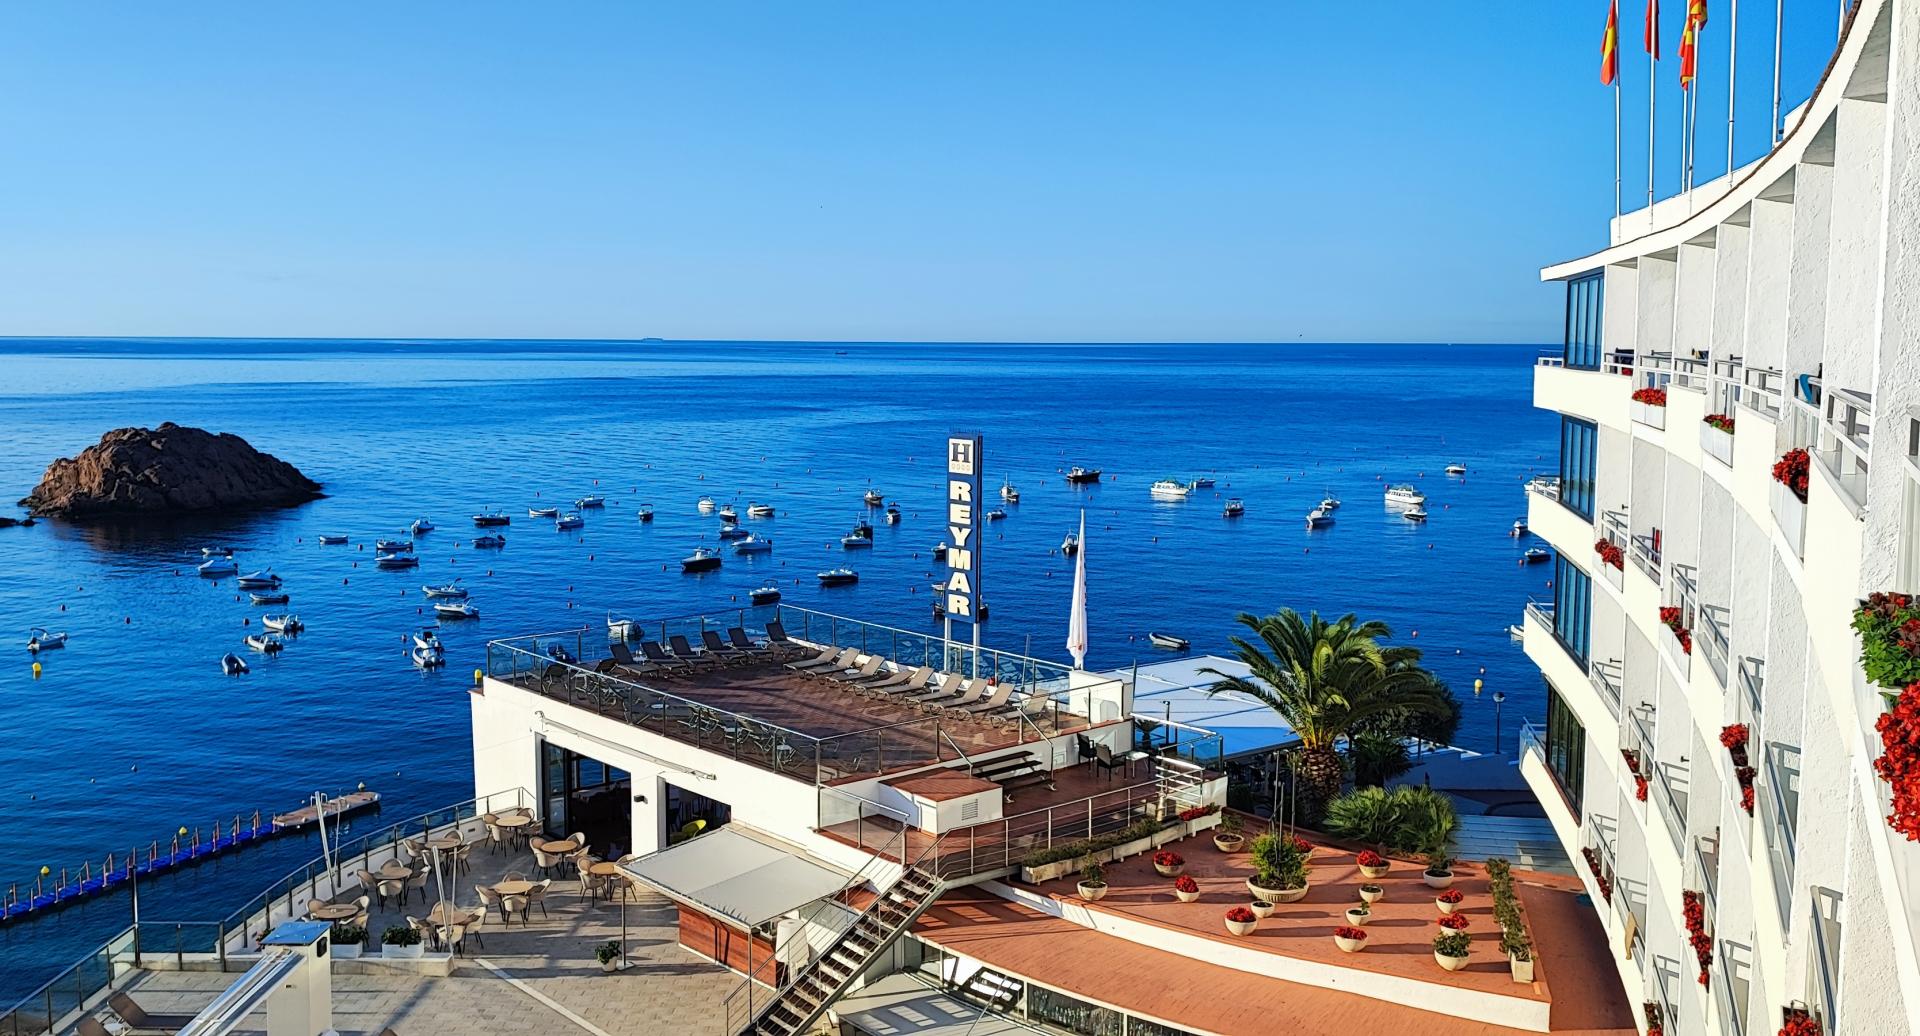 Stellen Sie sich Ihren nächsten Urlaub in Tossa de Mar vor